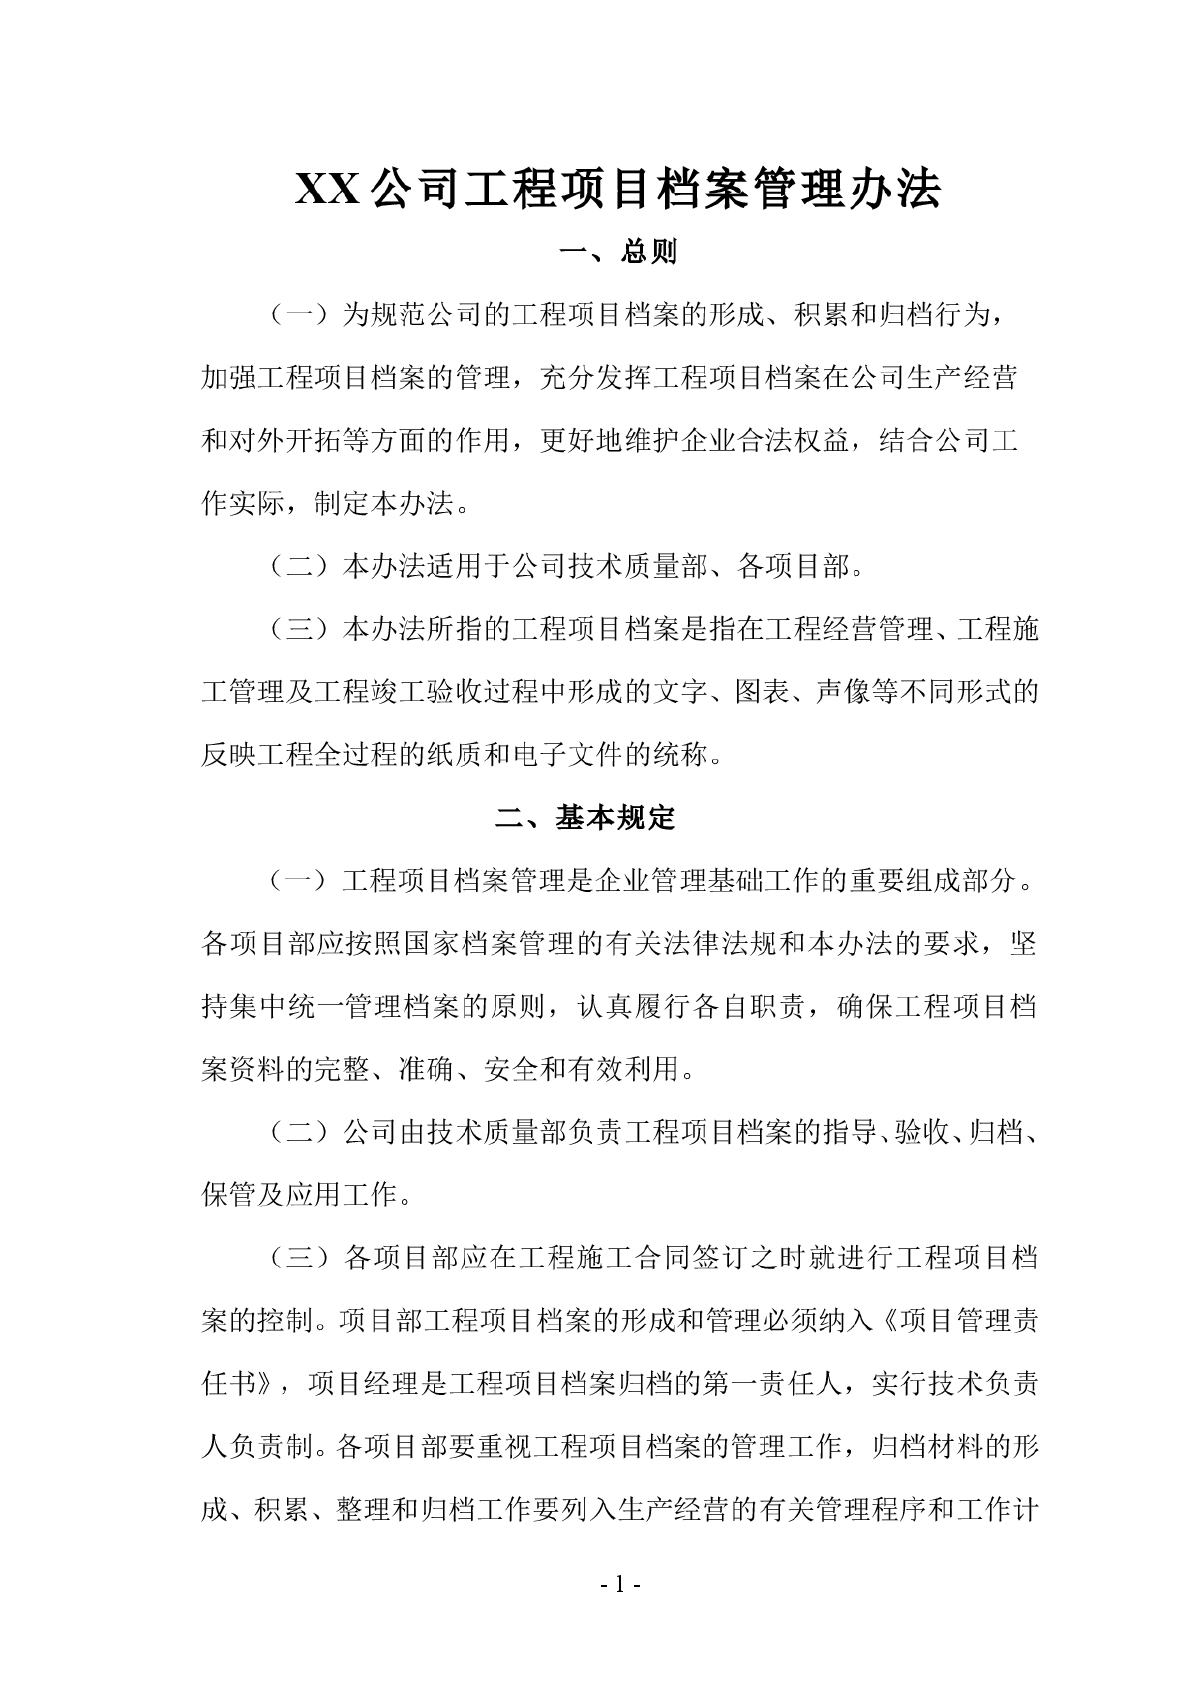 【安徽】建筑工程承包公司项目档案管理办法